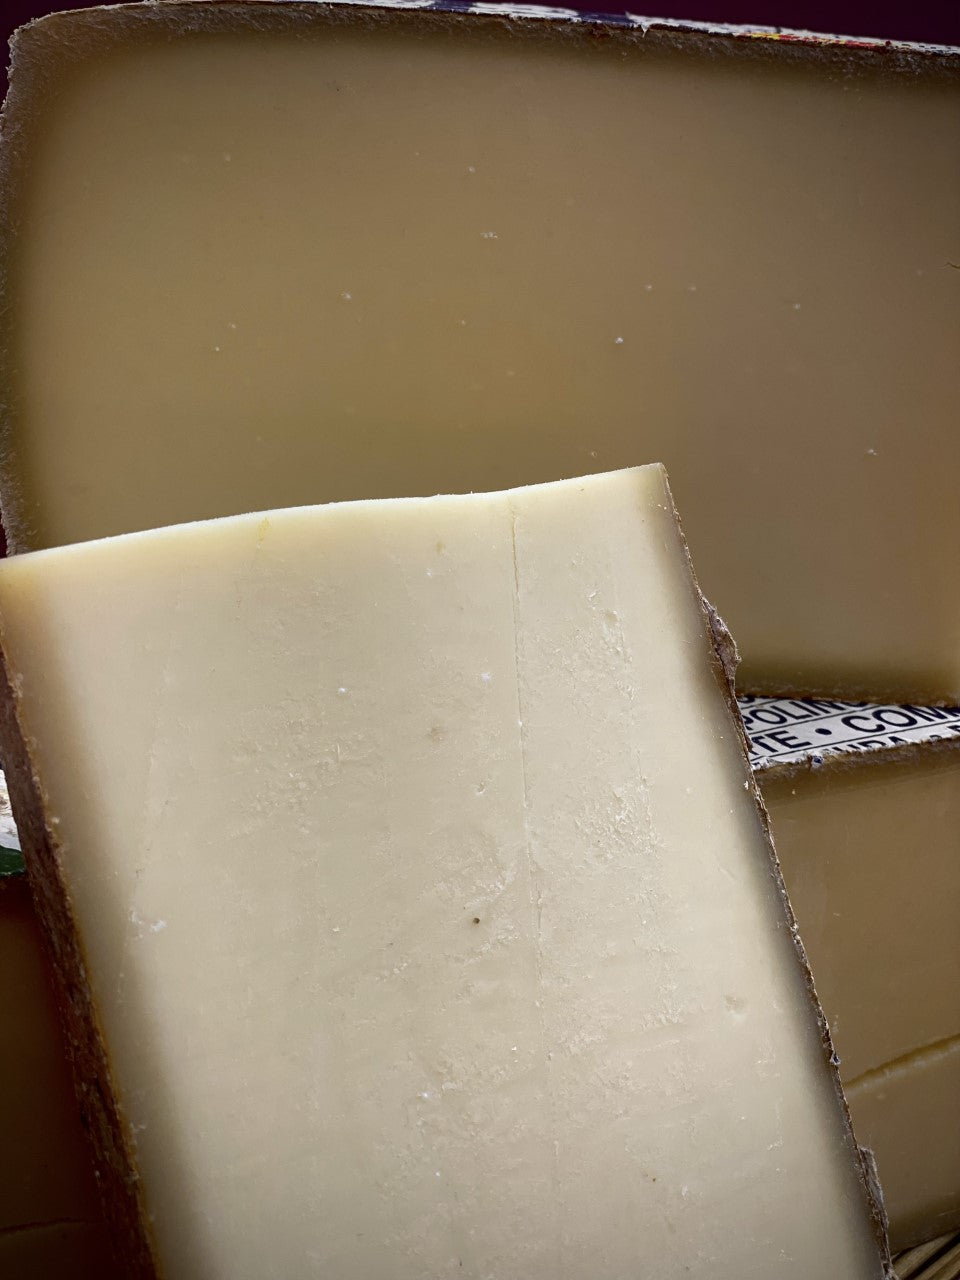 Comté : un fromage riche en calcium et phosphore !